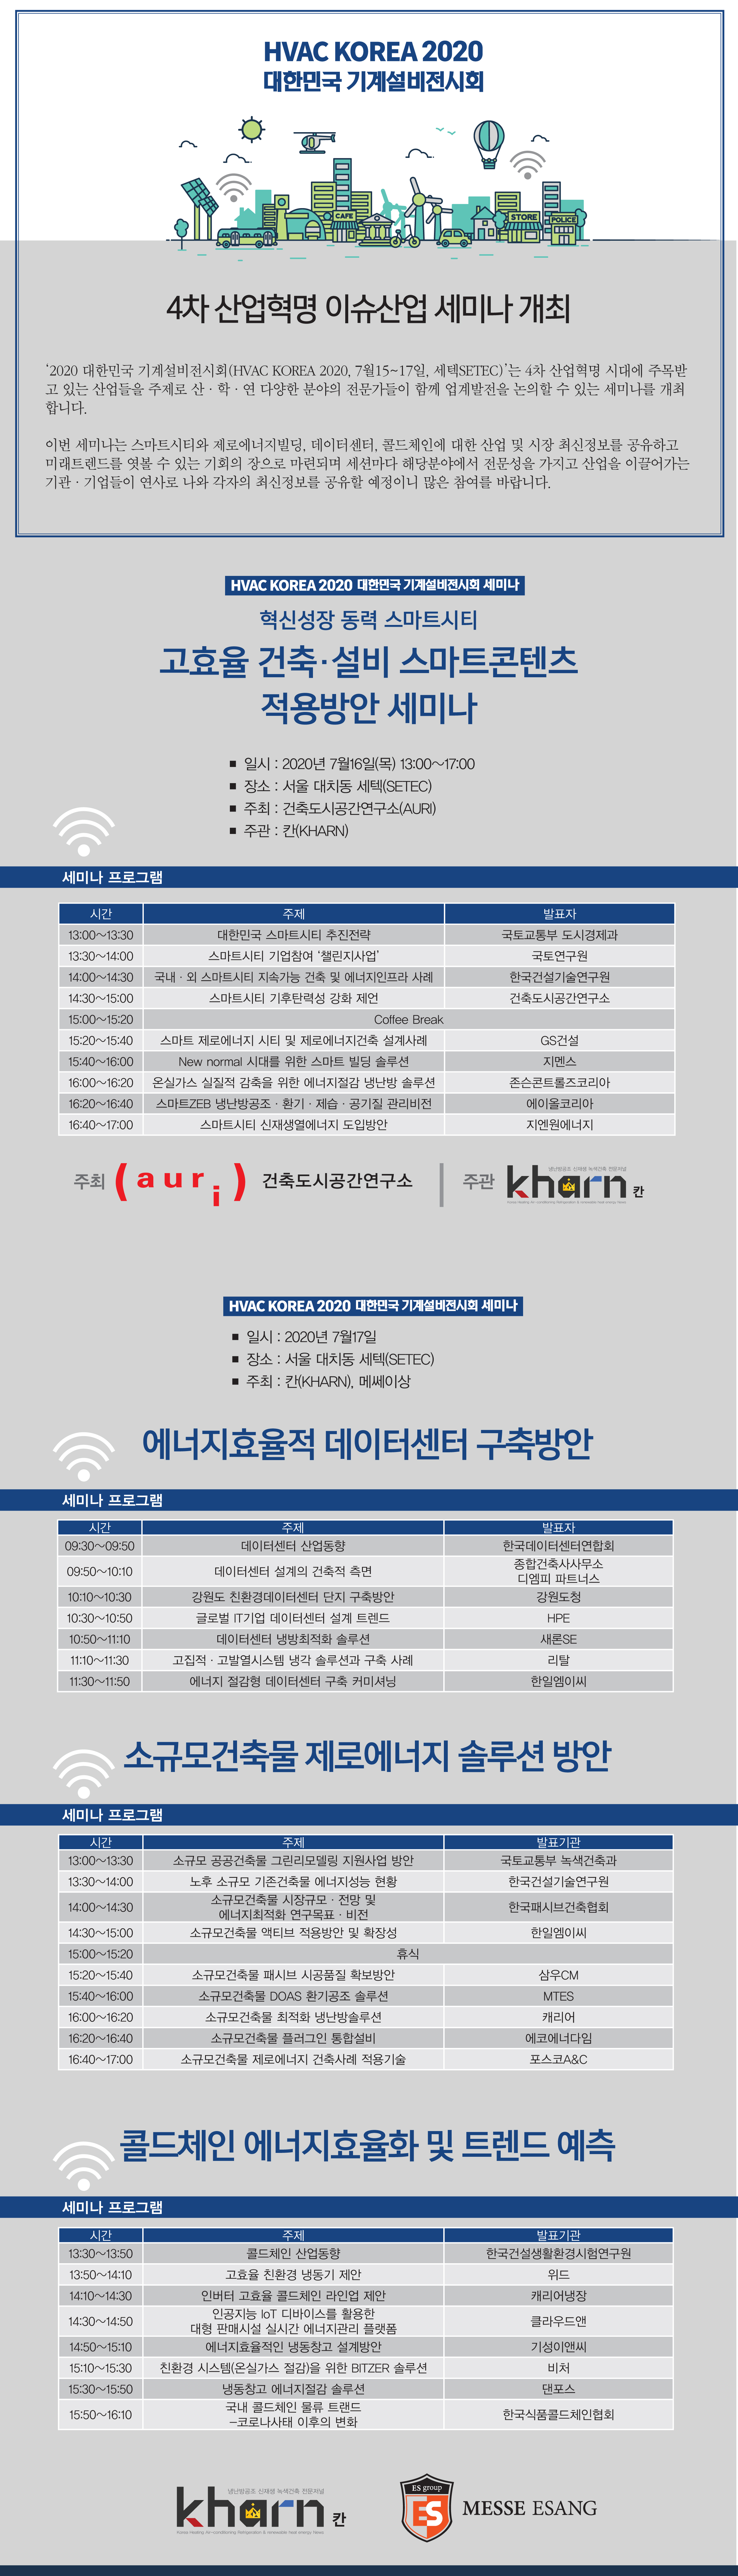 'HVAC KOREA 2020 대한민국 기계설비전시회 세미나' 개최에 대한 설명입니다 자세한 내용은 아래의 글을 확인해주세요